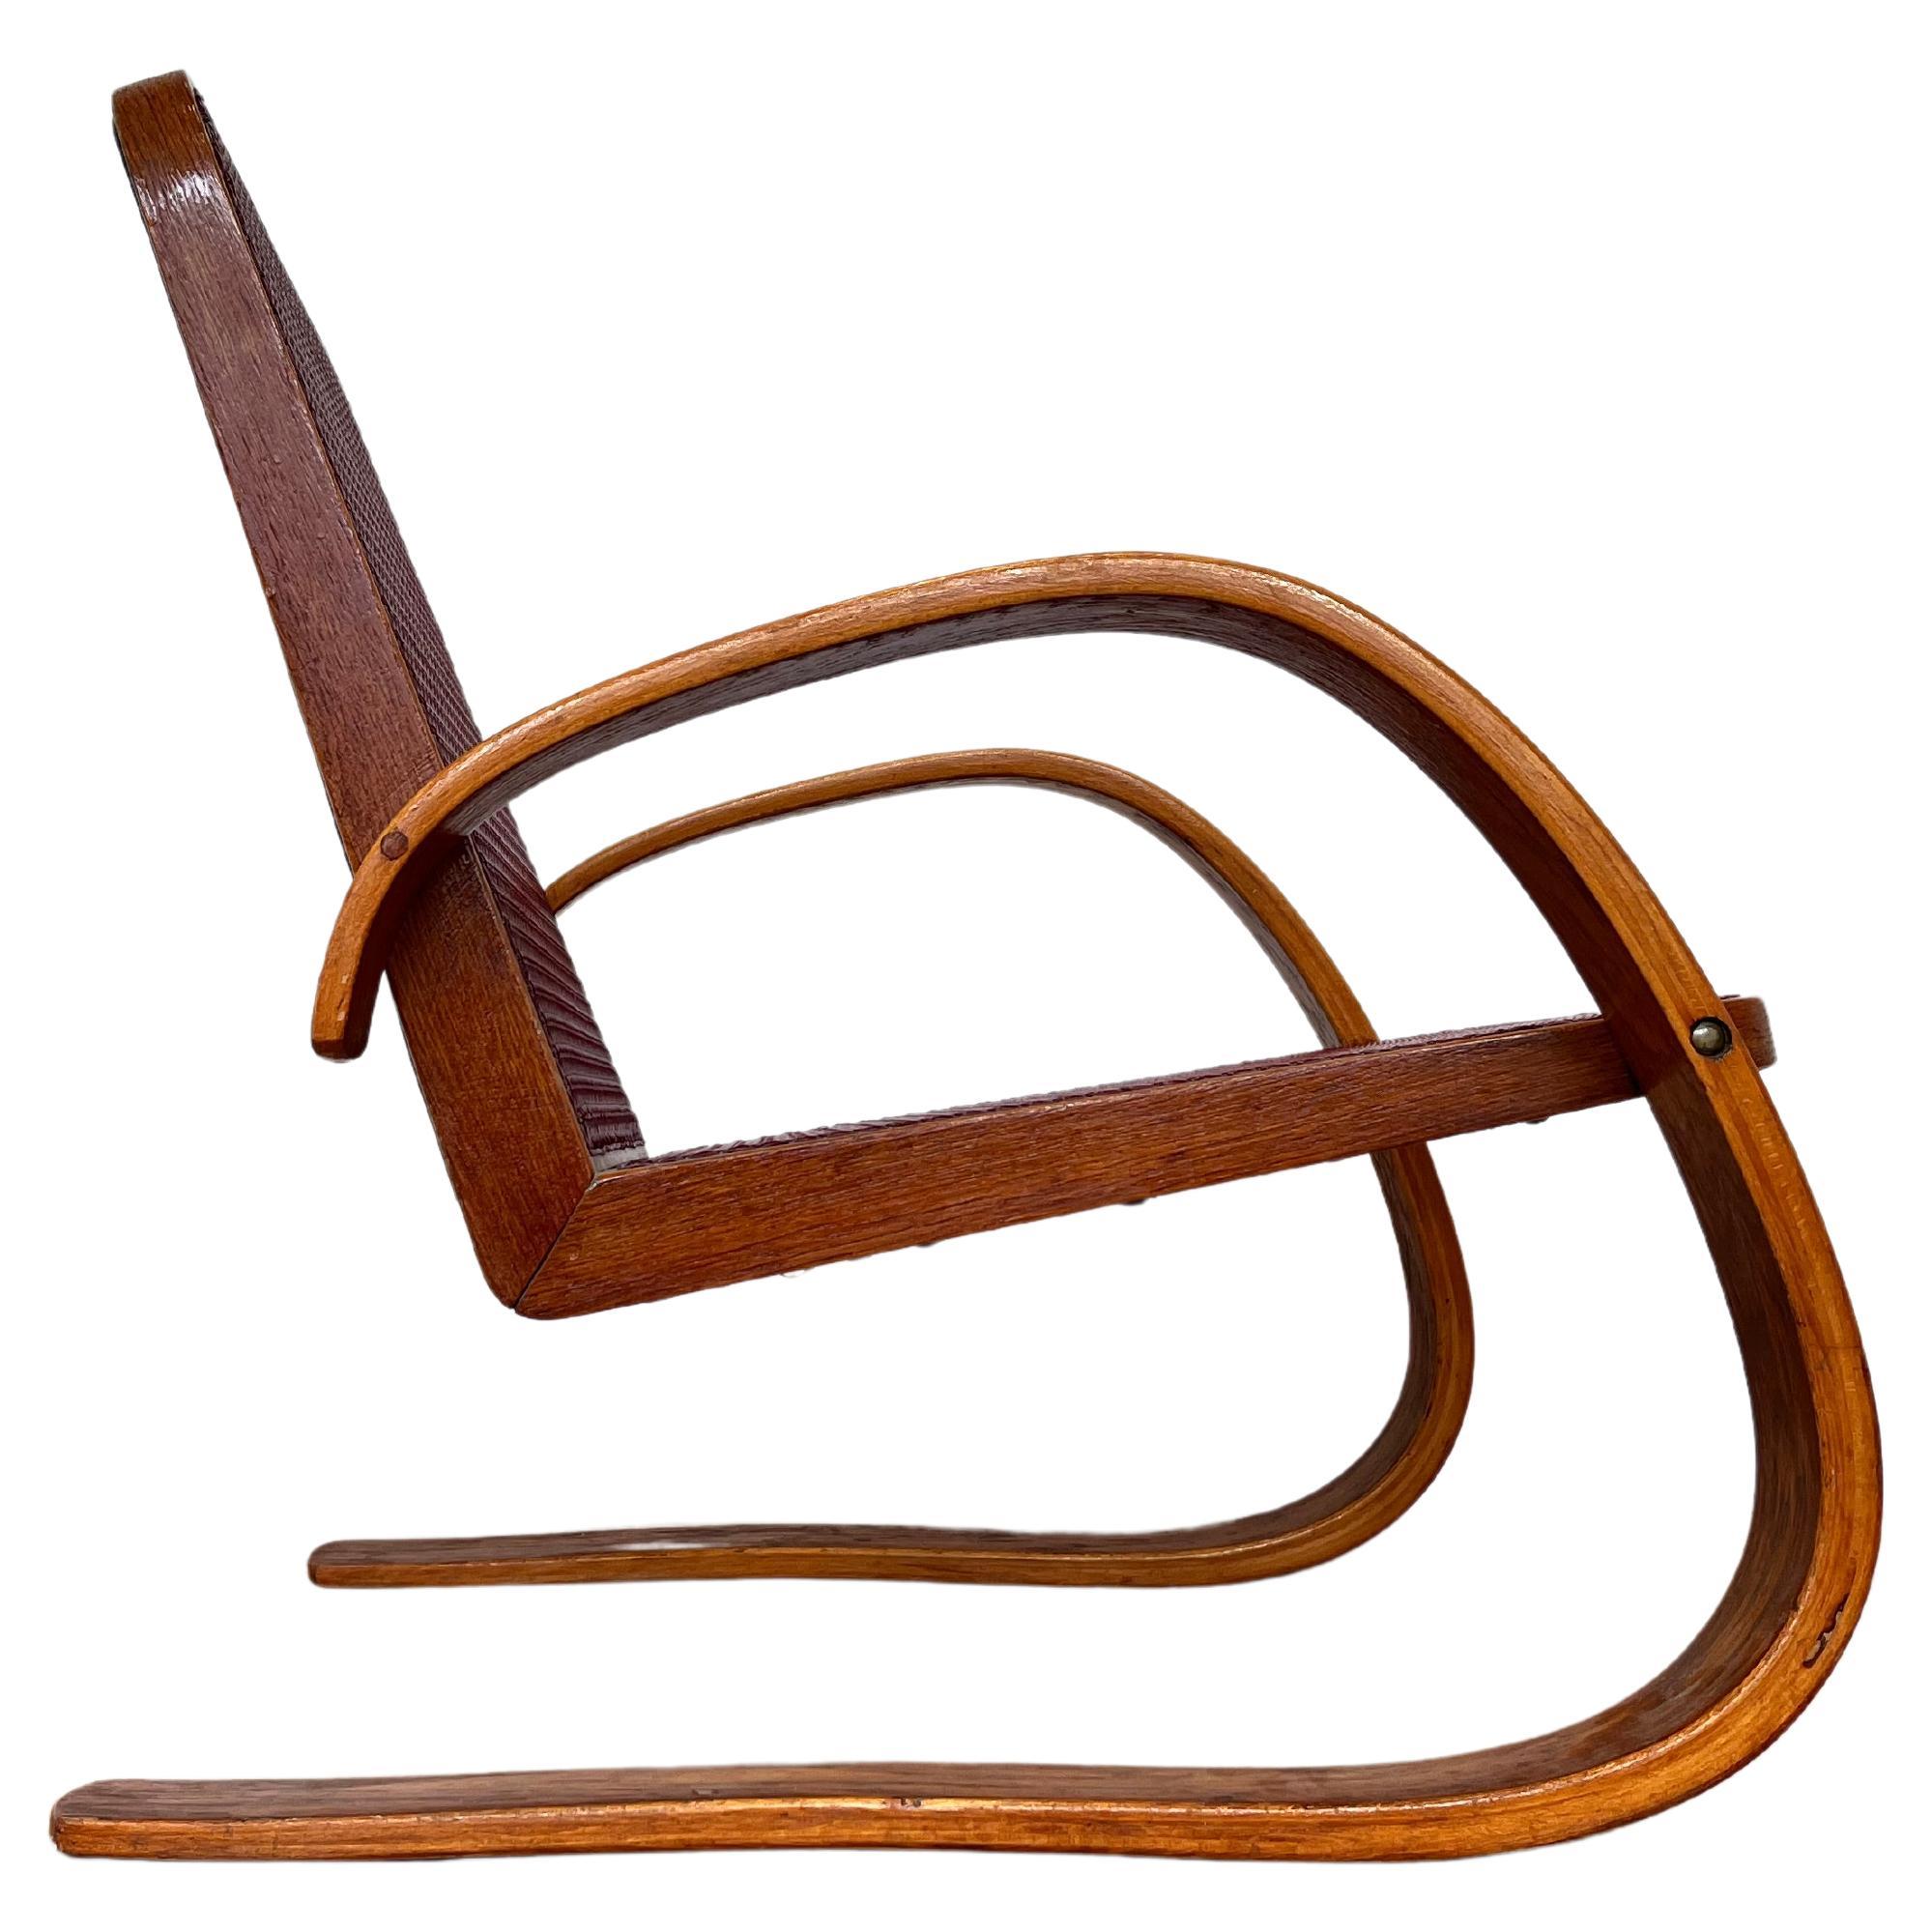 VERY RARE armchair by Miroslav Navrátil for Zdeněk Plesník - 1940s